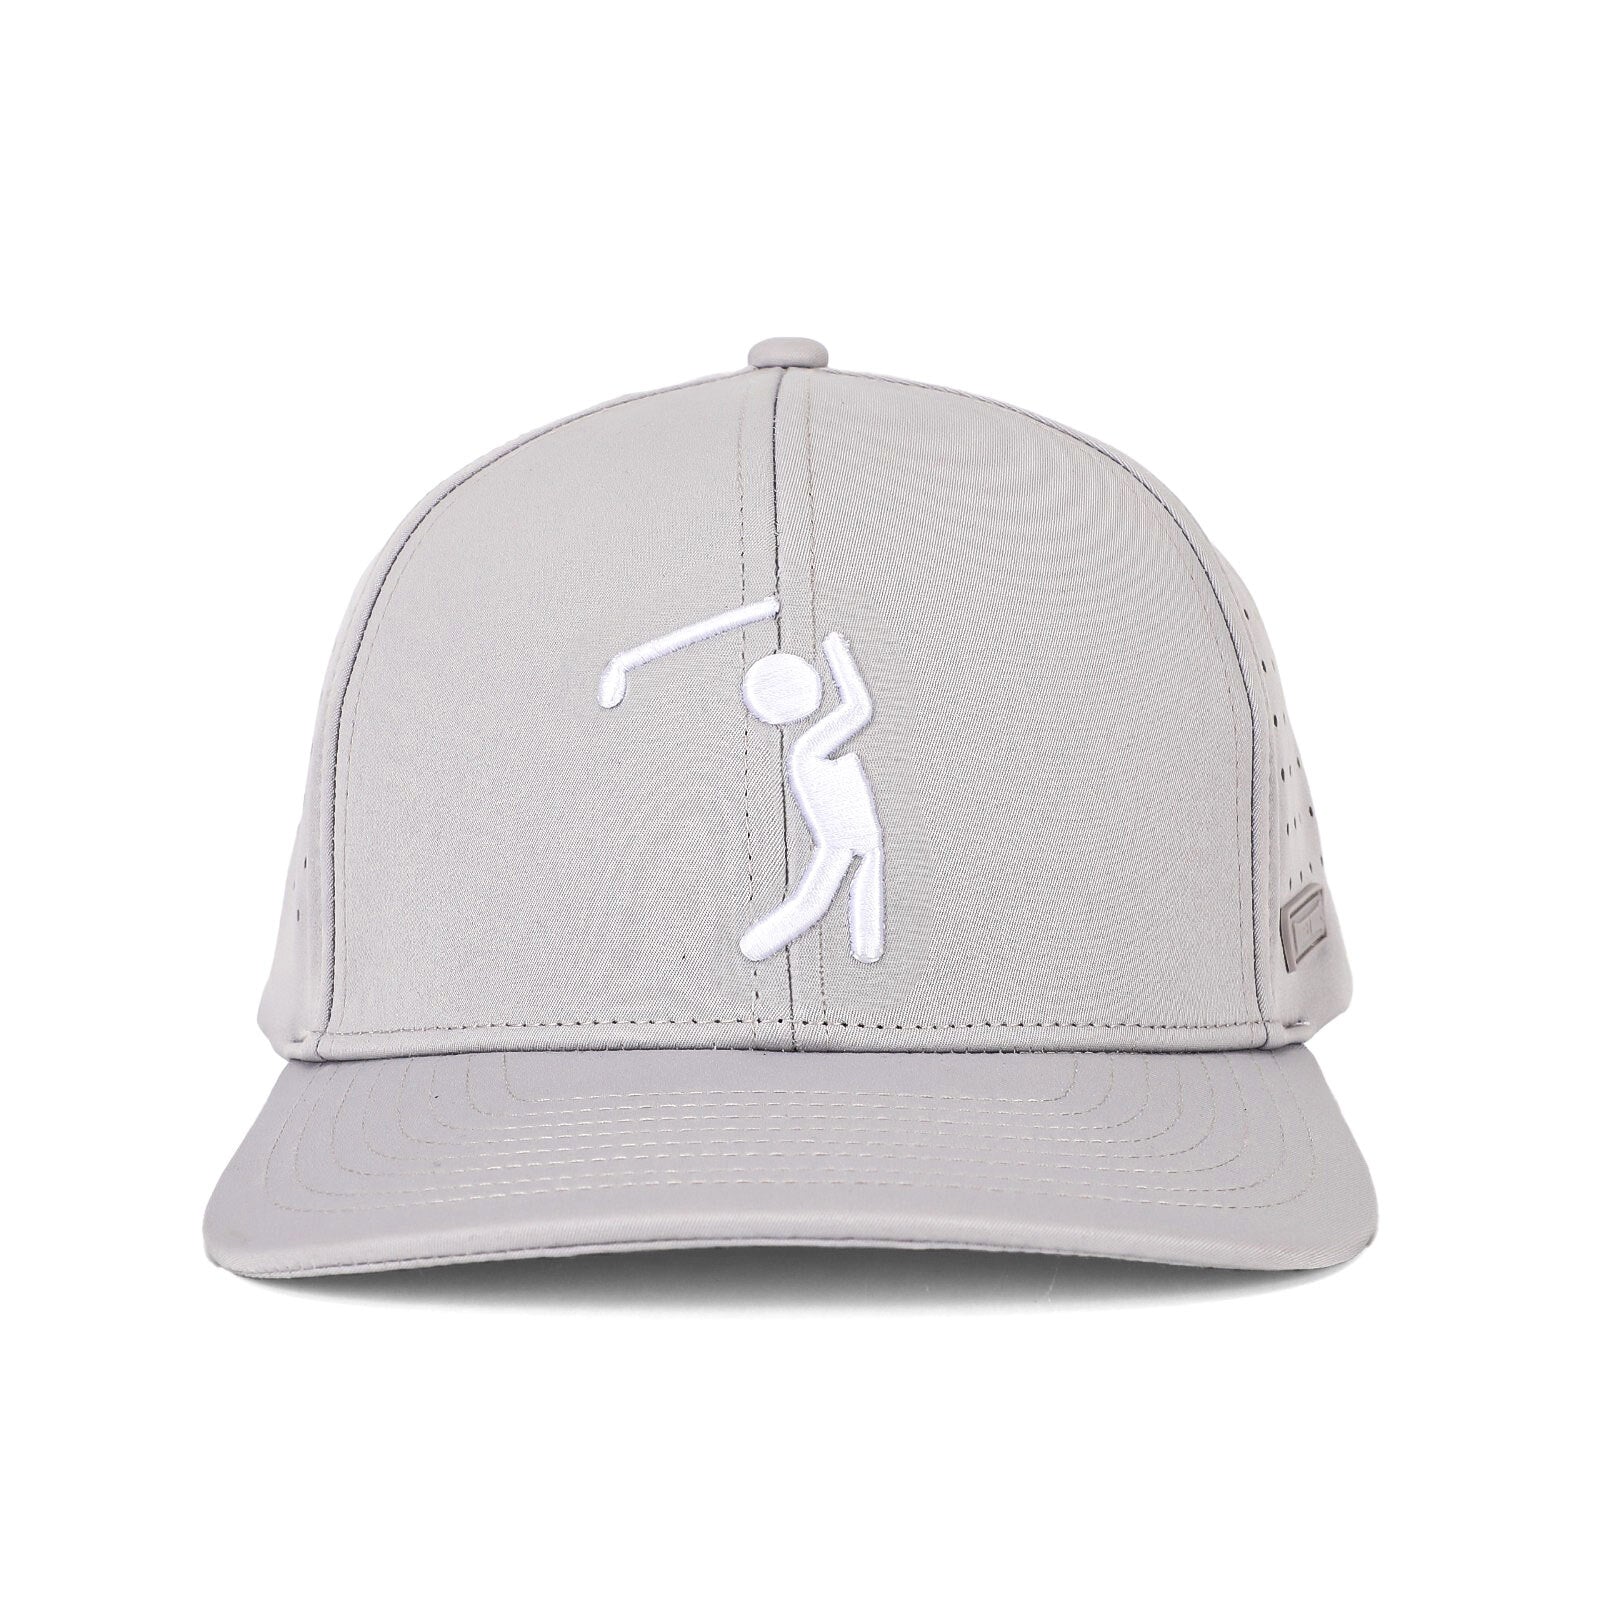 Bogeyman Light Grey - Performance Golf Hat - Stretch Fit